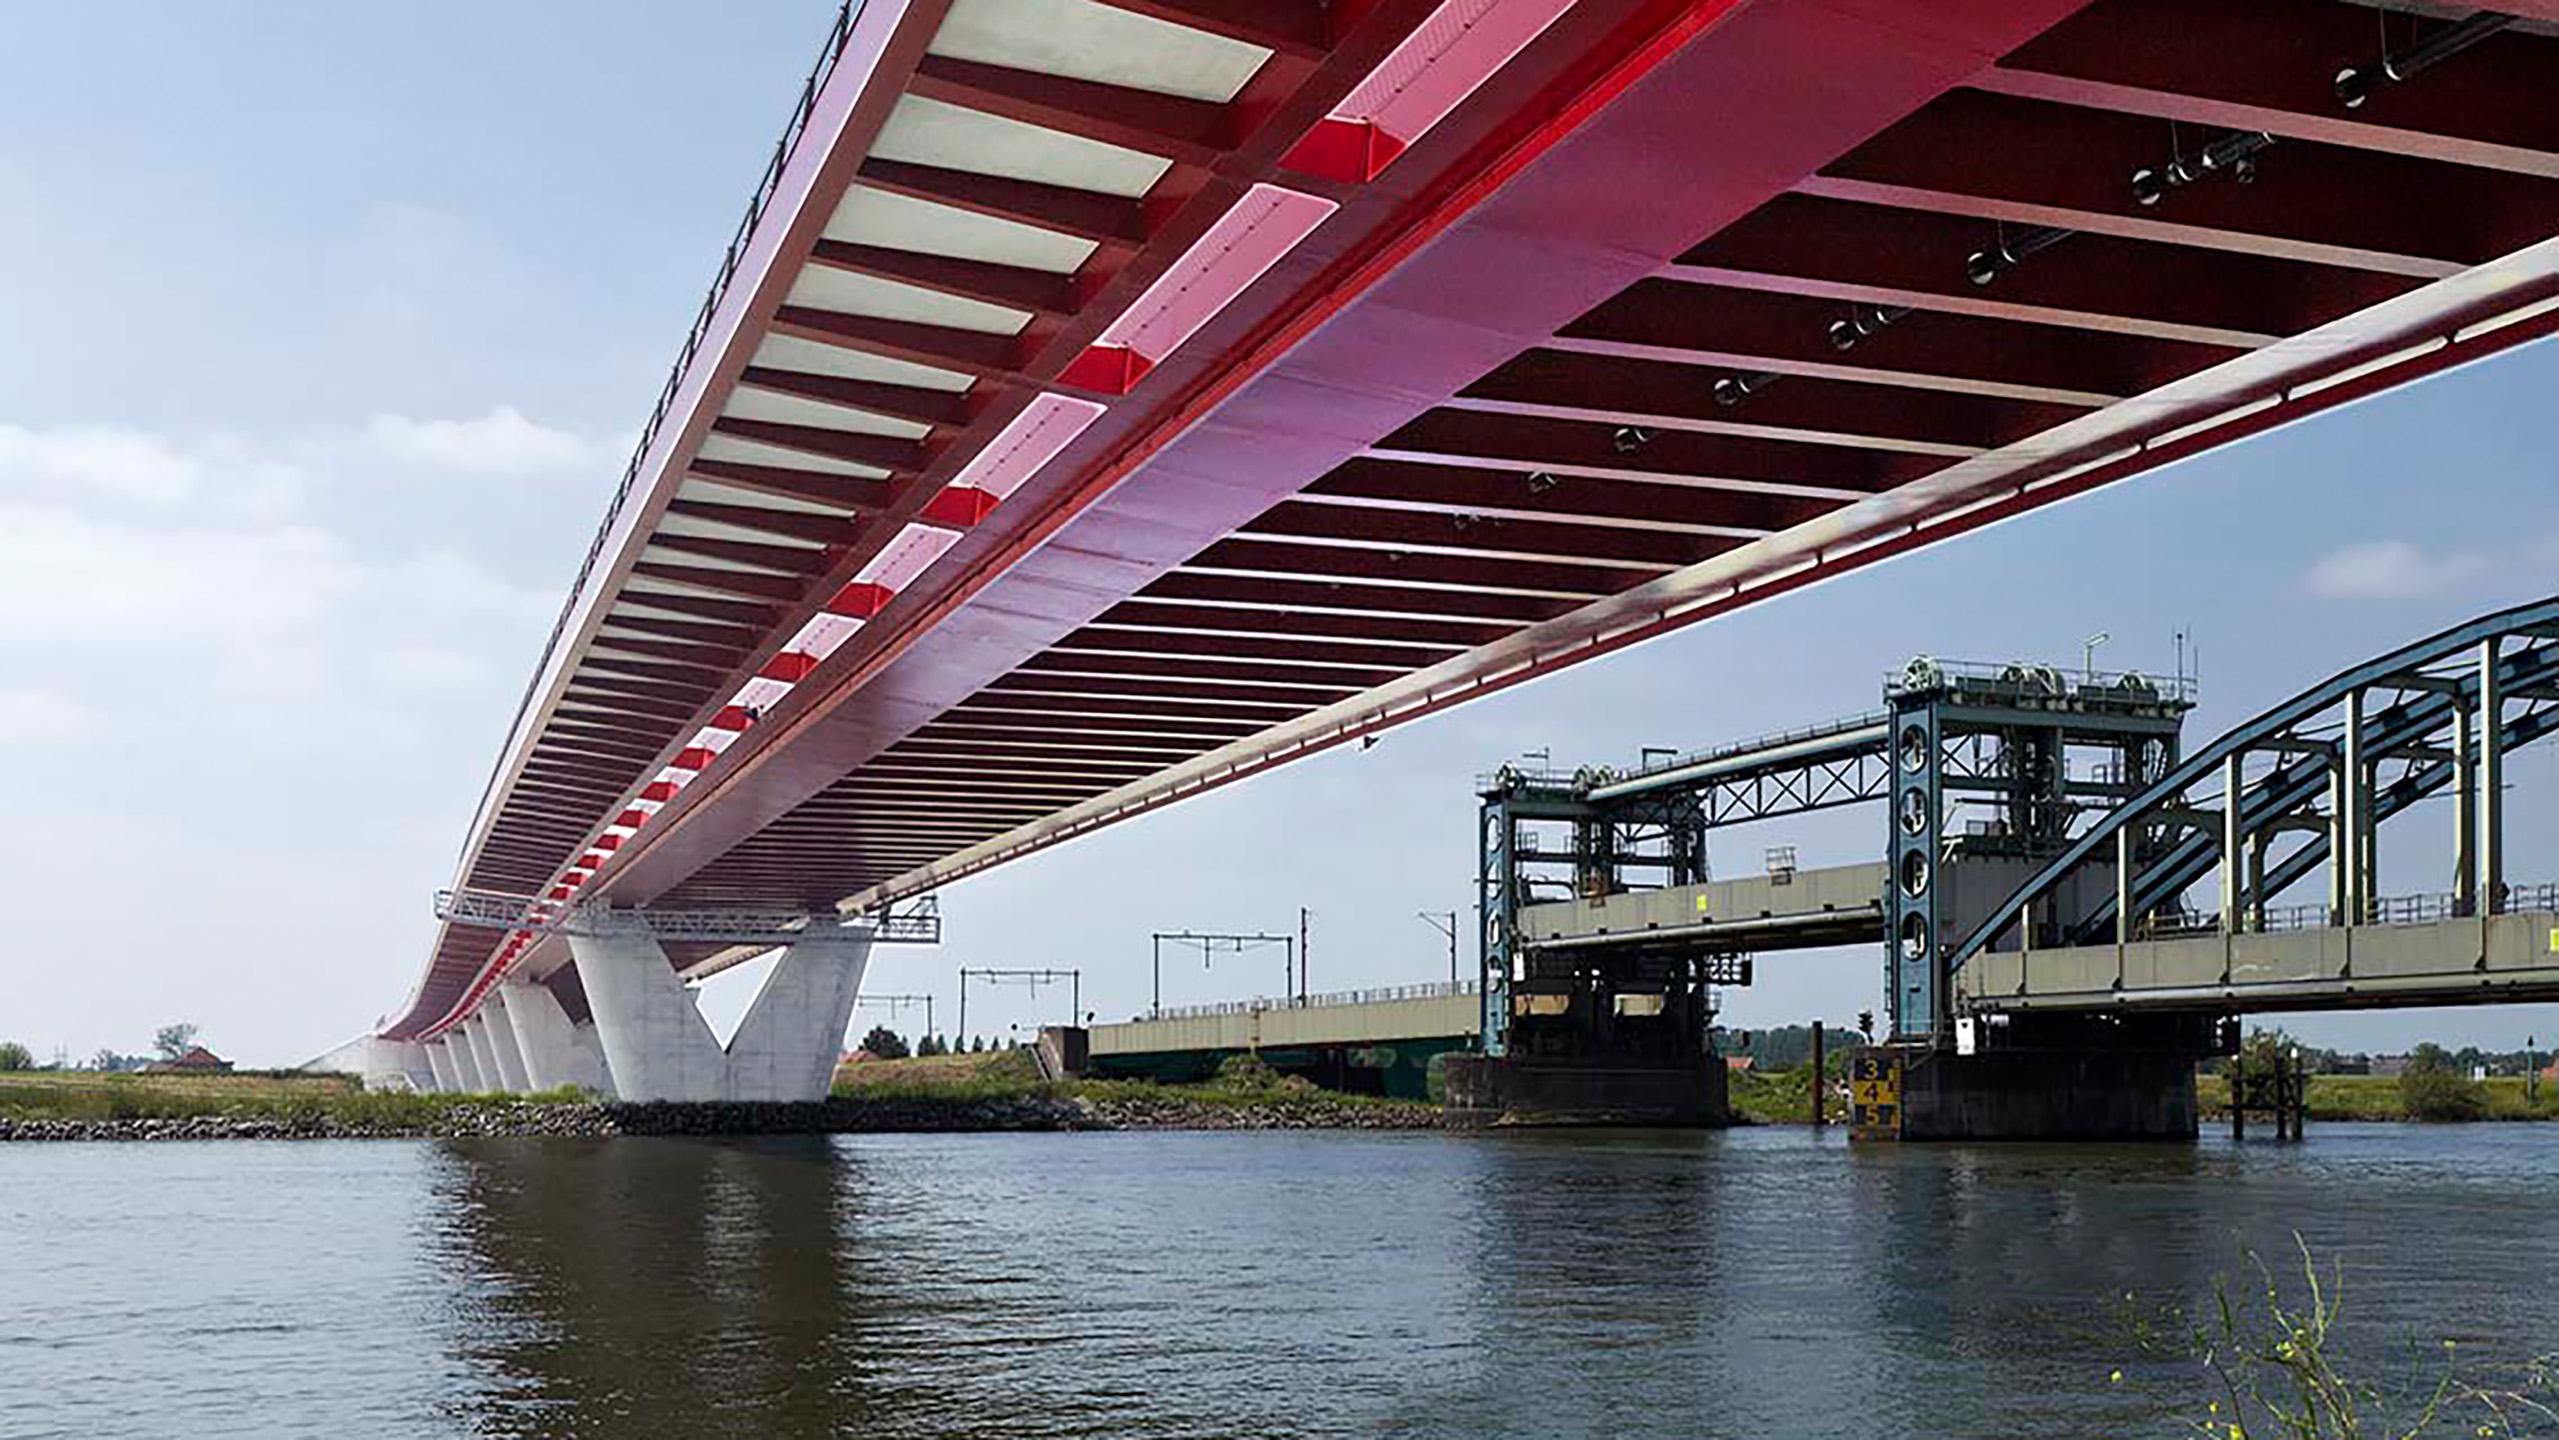 Rote IJsselbrücke über dem Wasser